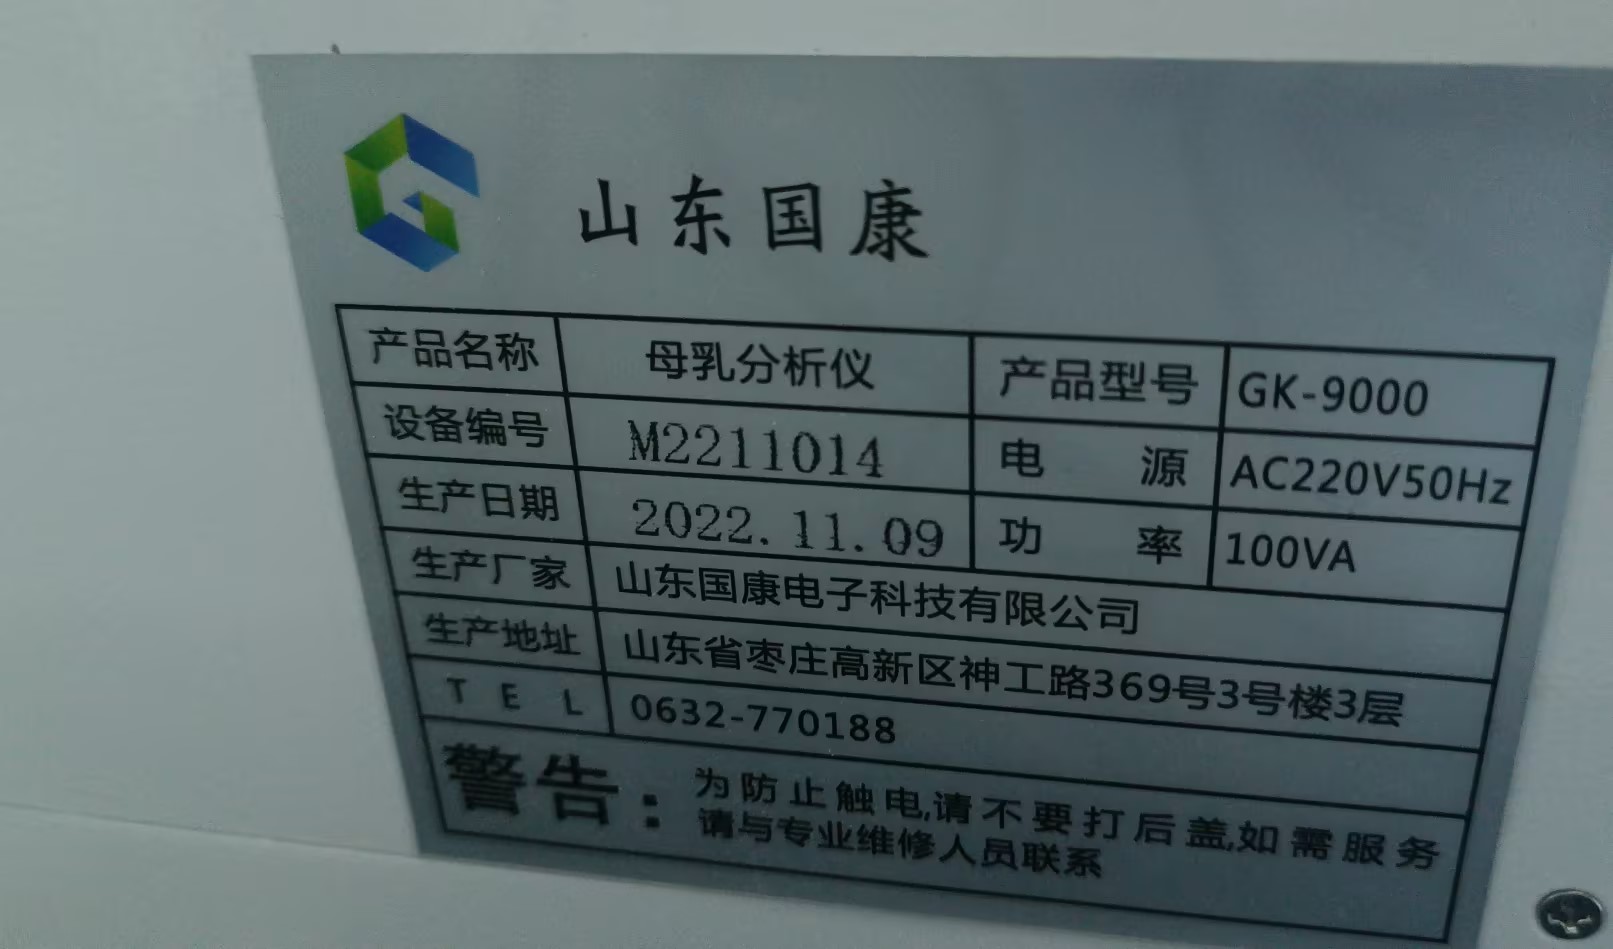 山东国康GK-9000母乳分析仪成功落地广东湛江坡头区妇幼保健院！